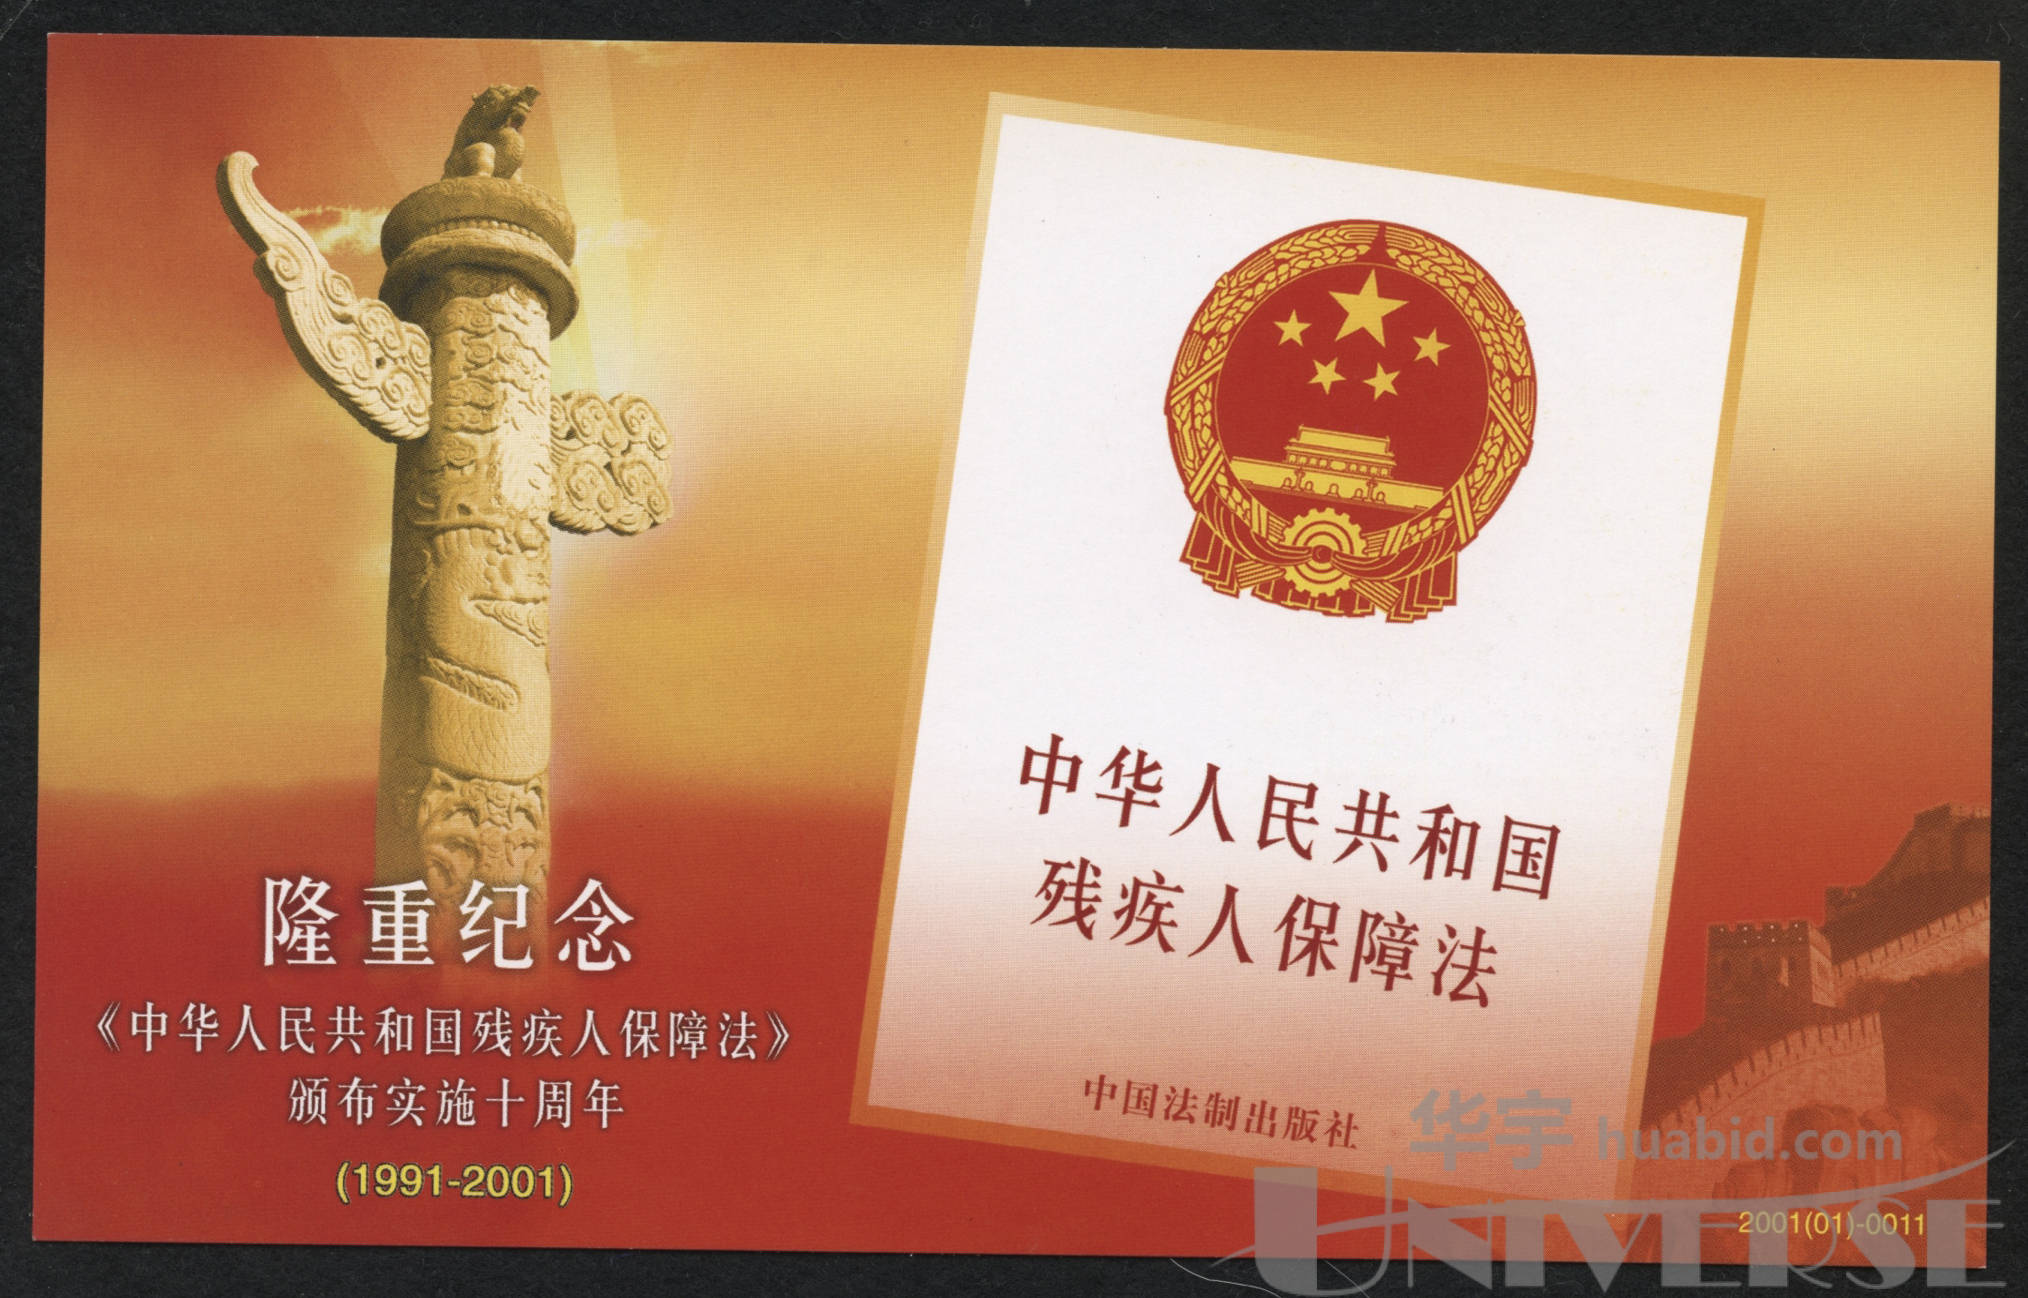 pfn-40中华人民共和国残疾人保障法颁布并正式实施牡丹邮资加印片新约